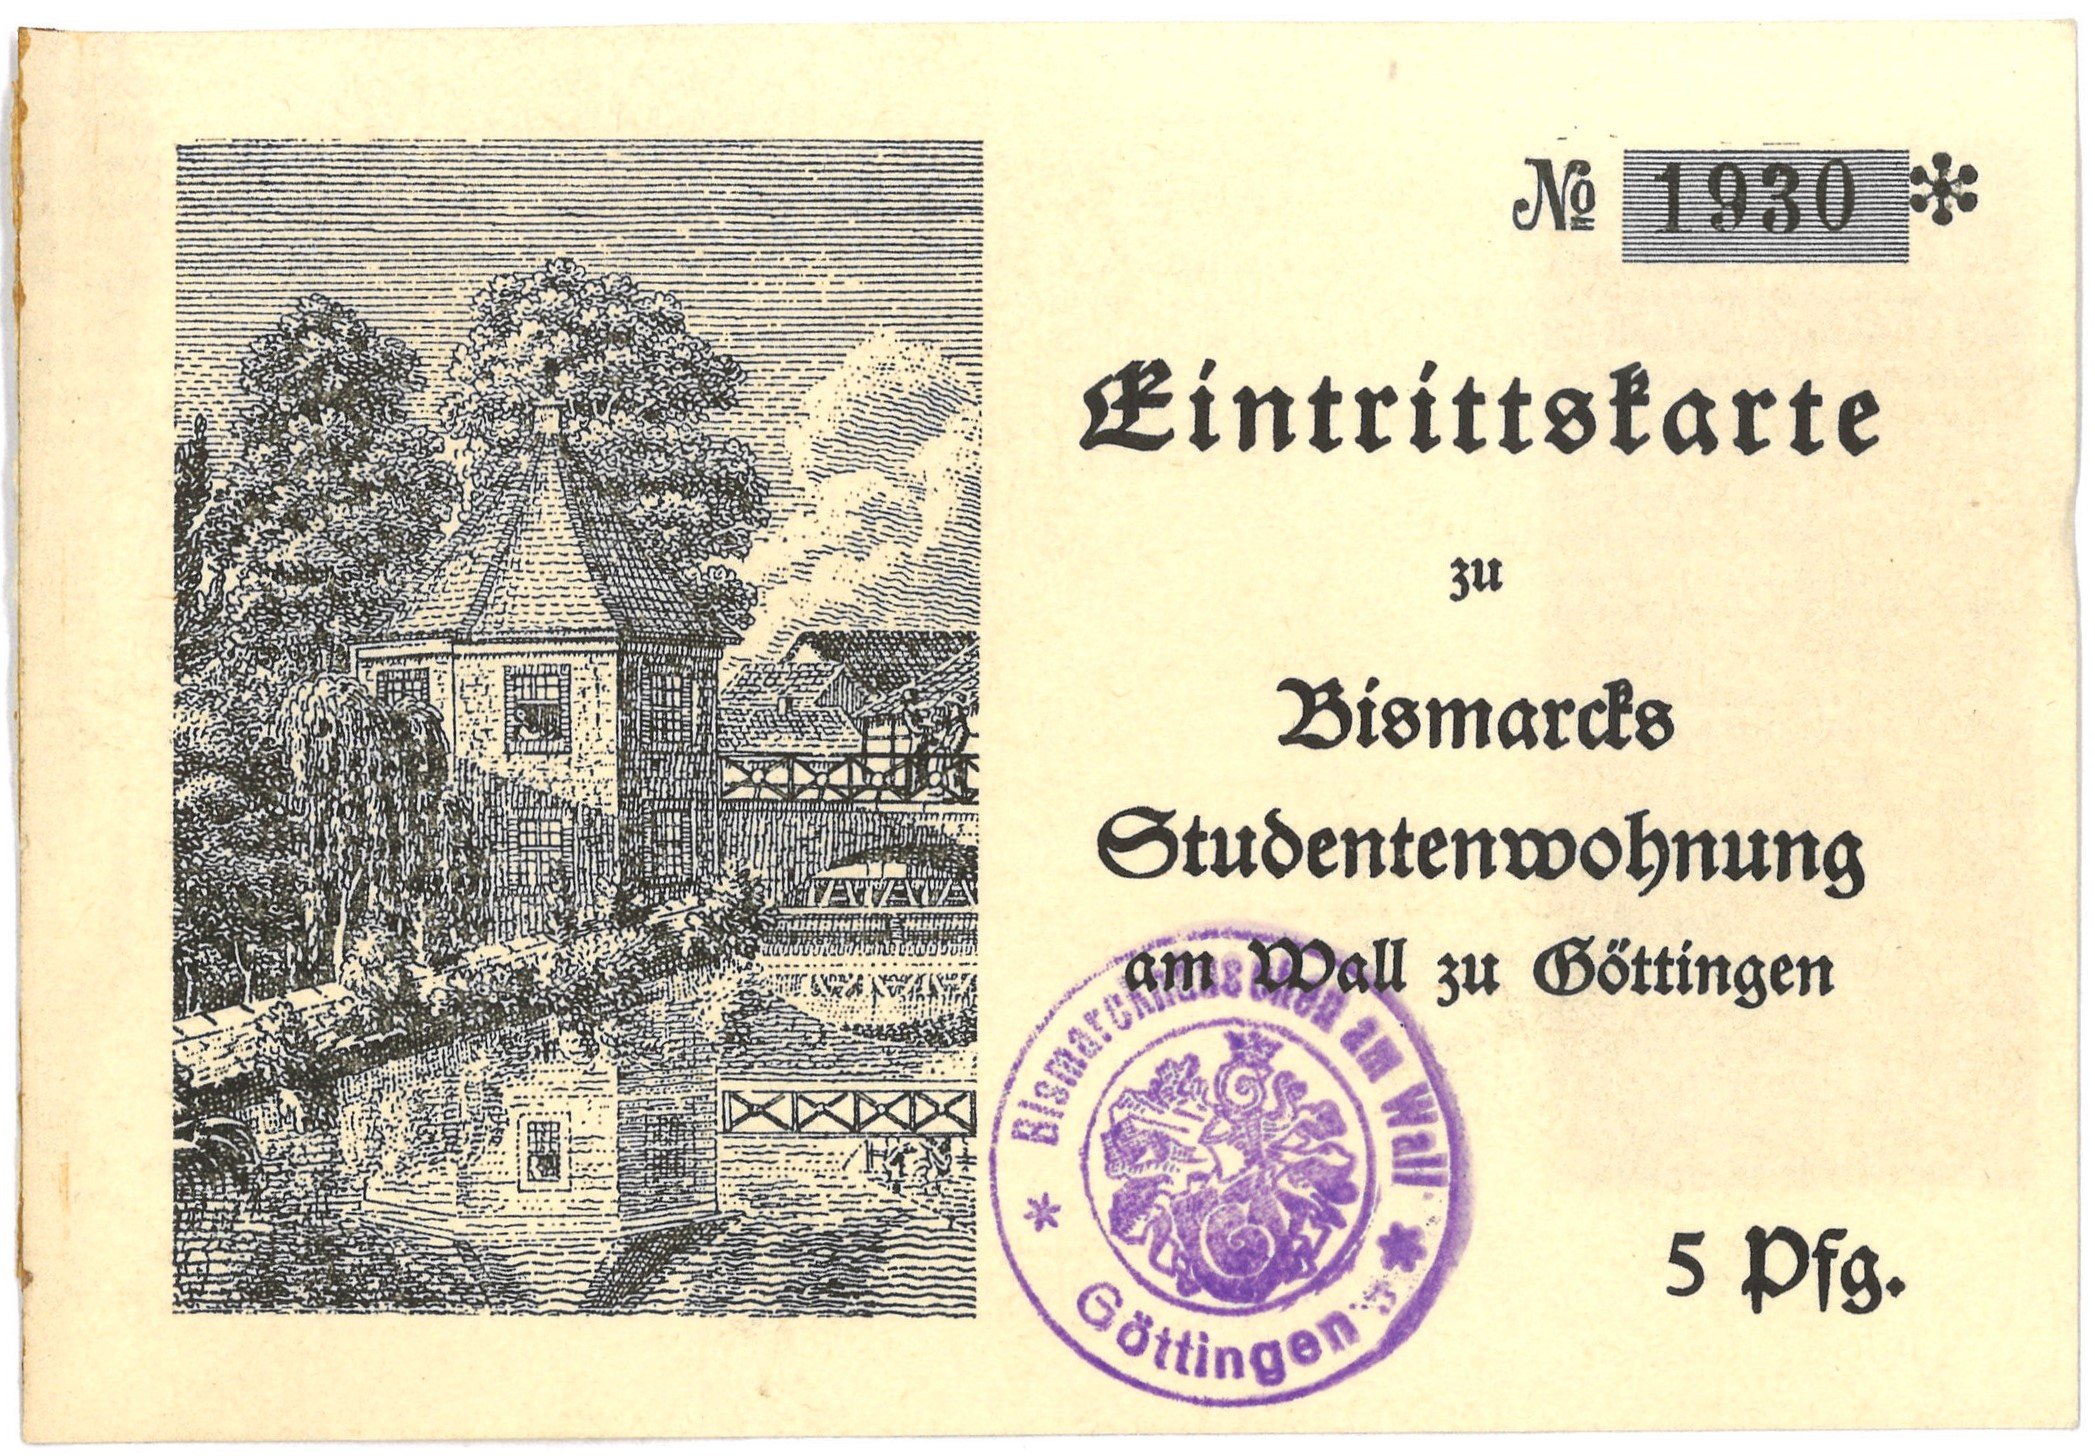 Göttingen: Bismarcks Studentenwohnung von 1833 (Landesgeschichtliche Vereinigung für die Mark Brandenburg e.V., Archiv CC BY)